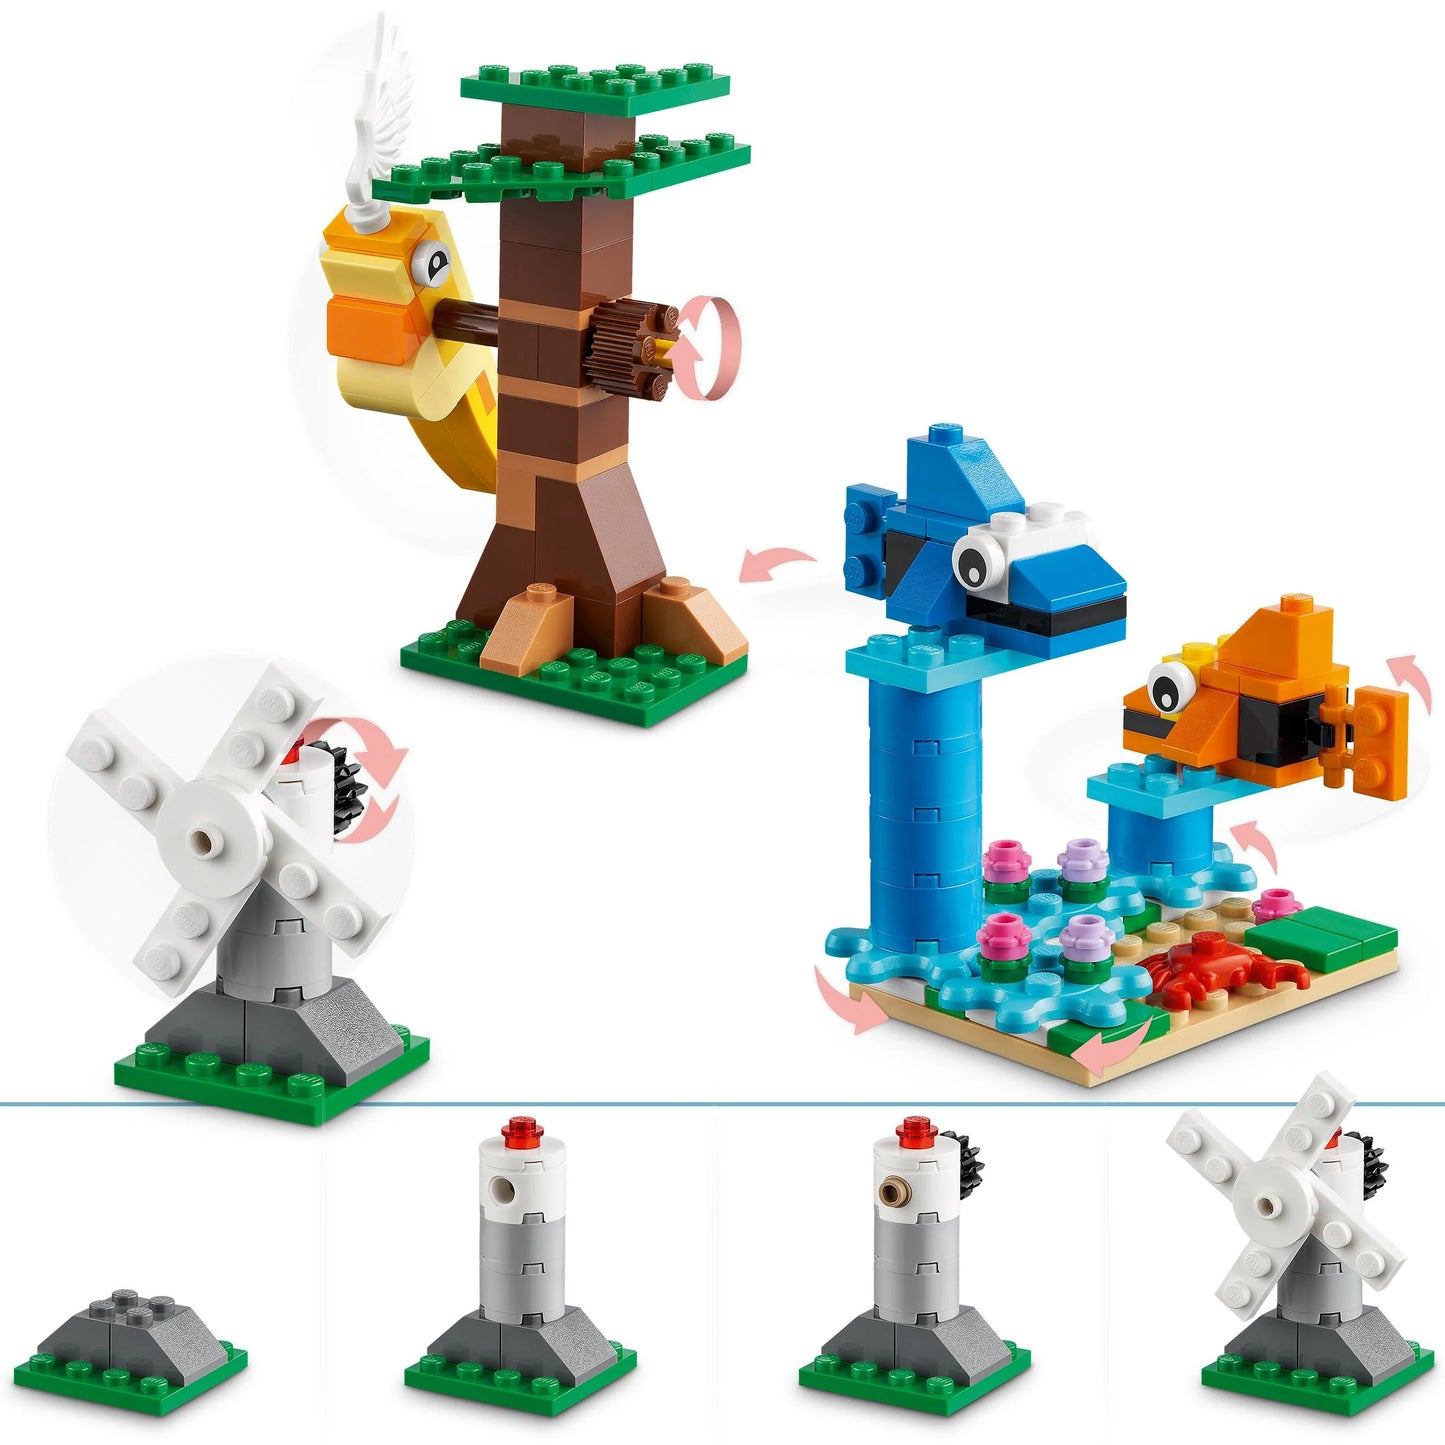 Stenen en functies-LEGO Classic